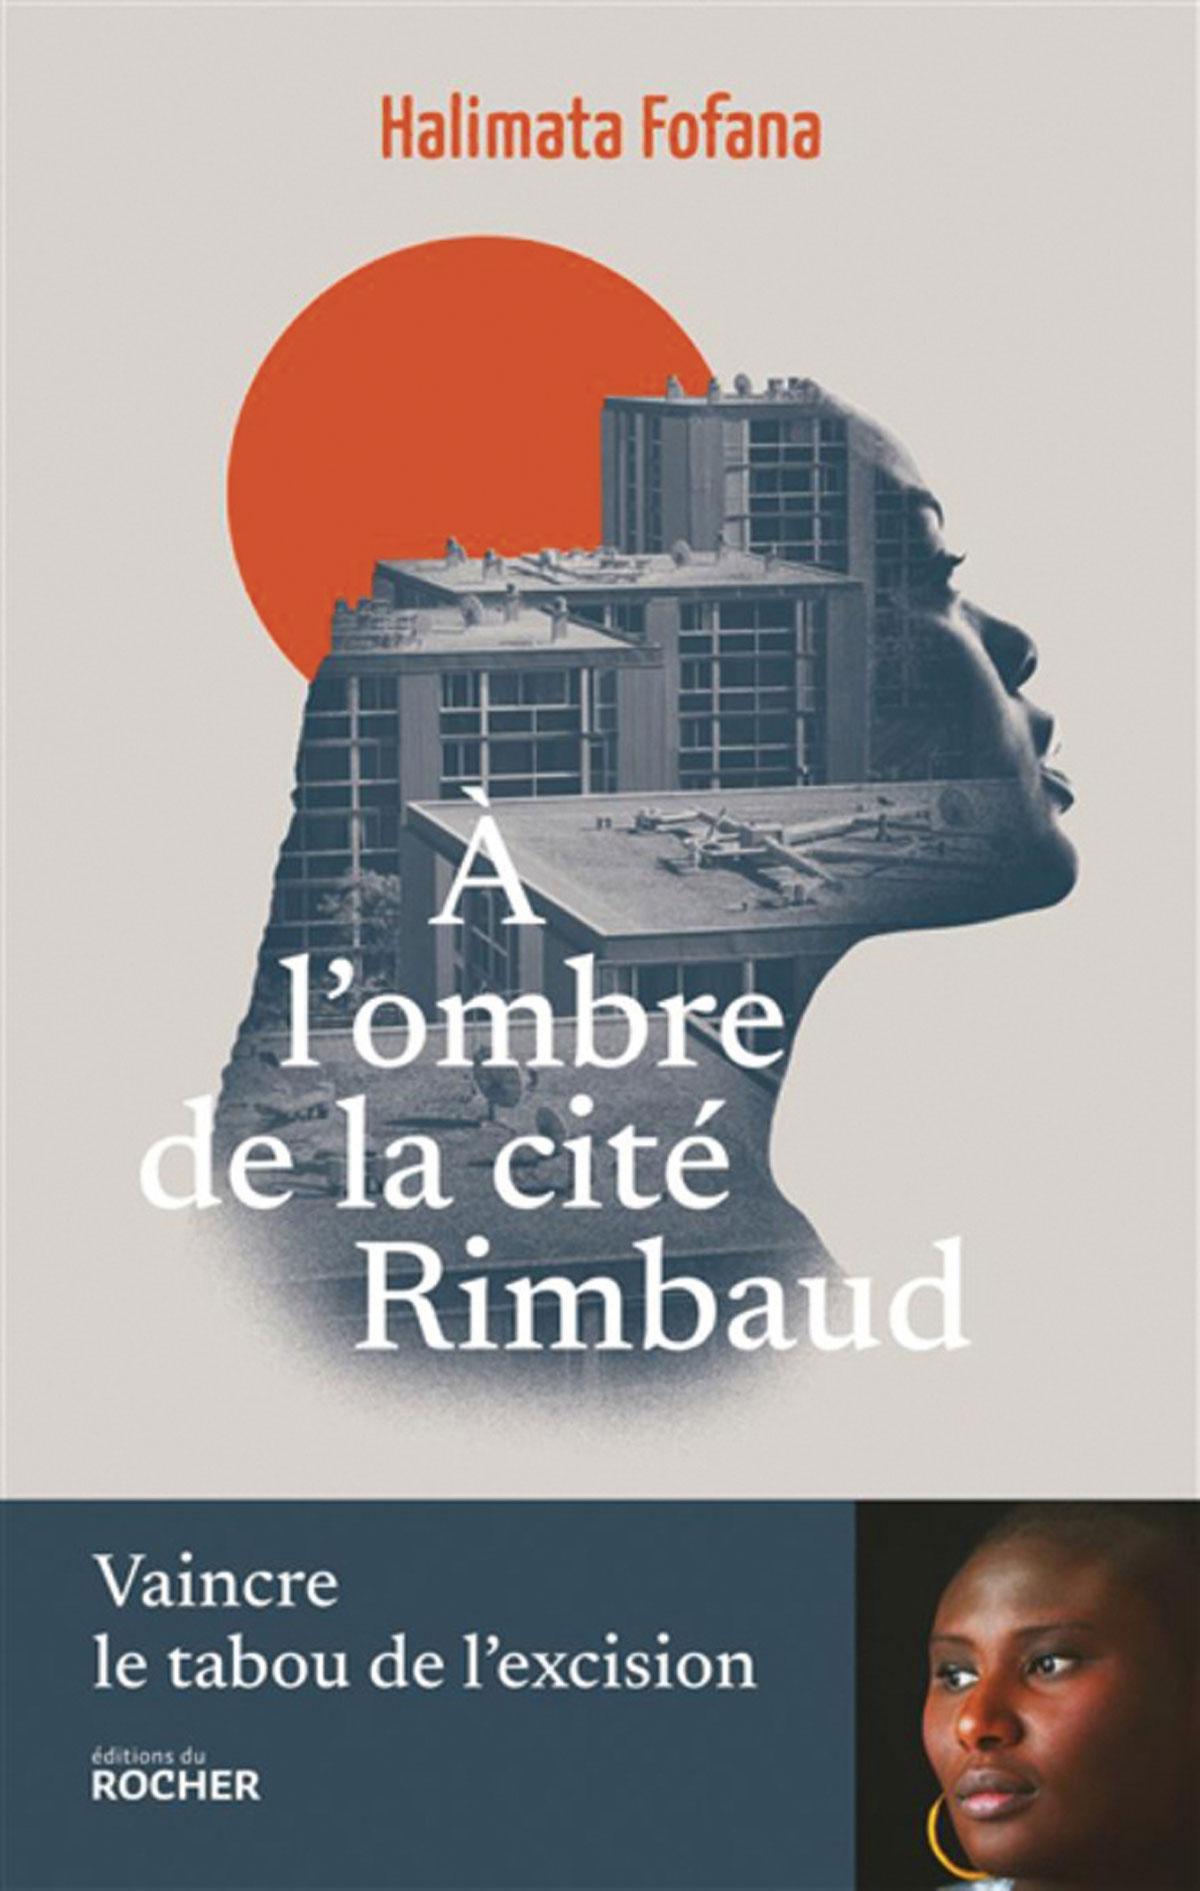 (1) A l’ombre de la cité Rimbaud. Vaincre le tabou de l’excision, par Halimata Fofana, éd. du Rocher, 232 p.